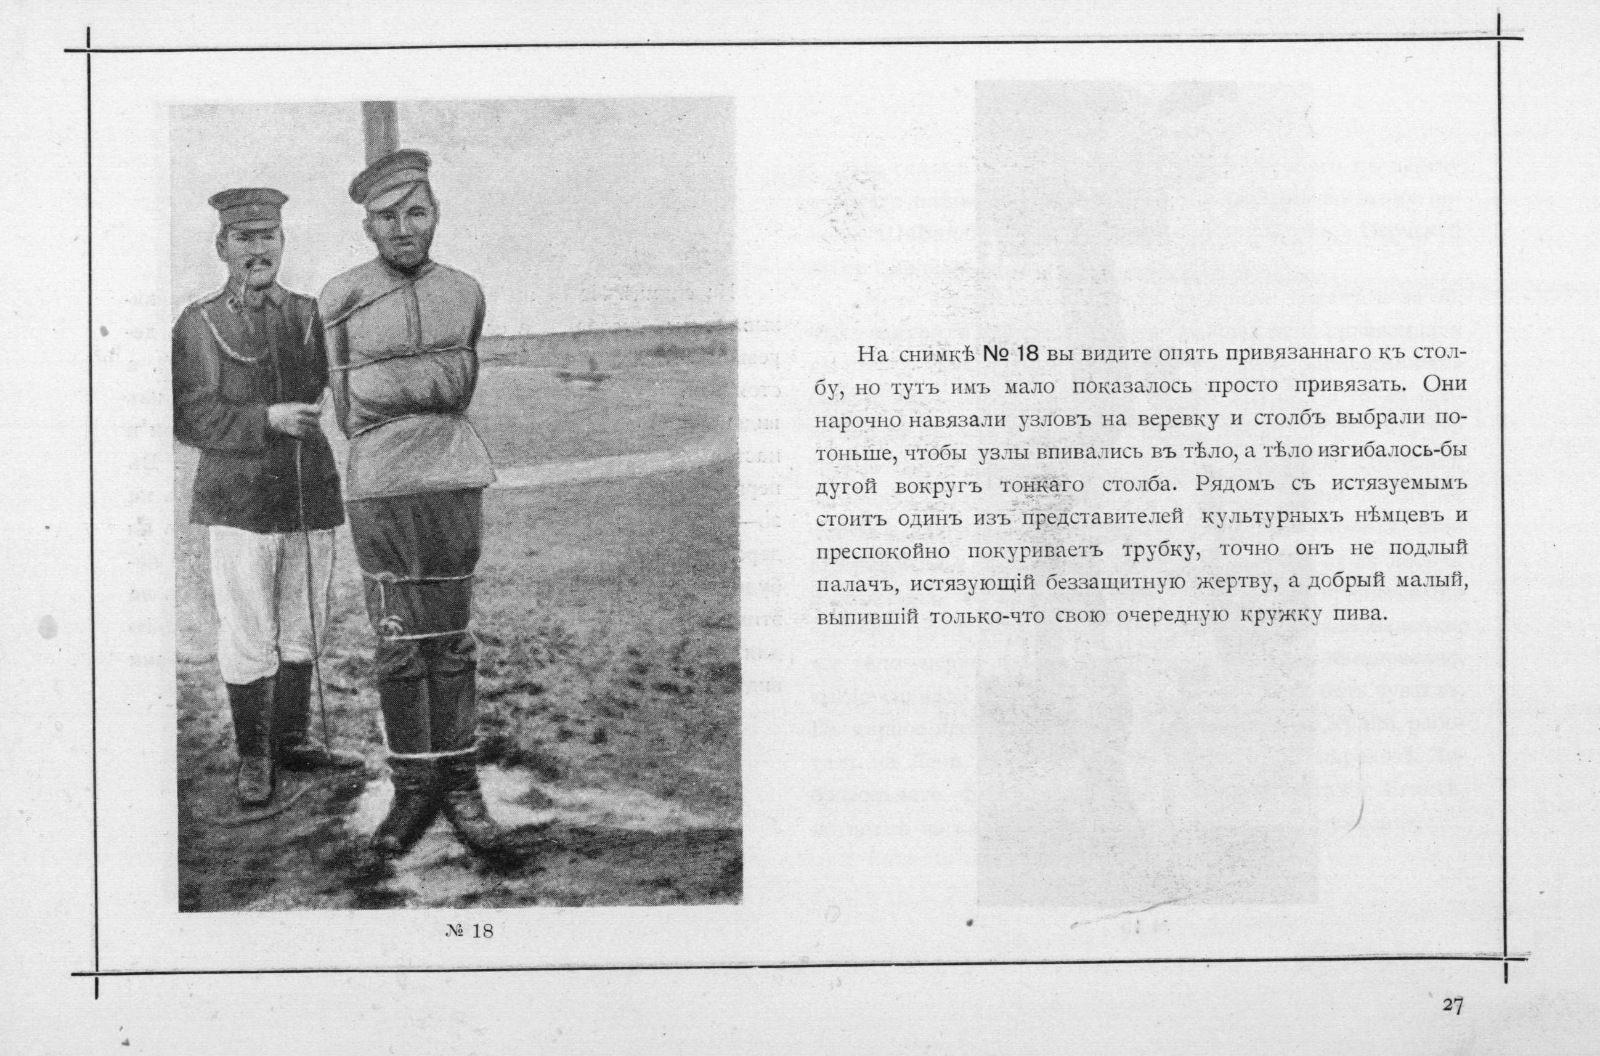 Удостоверение военнопленного в австрийском плену 1918 года